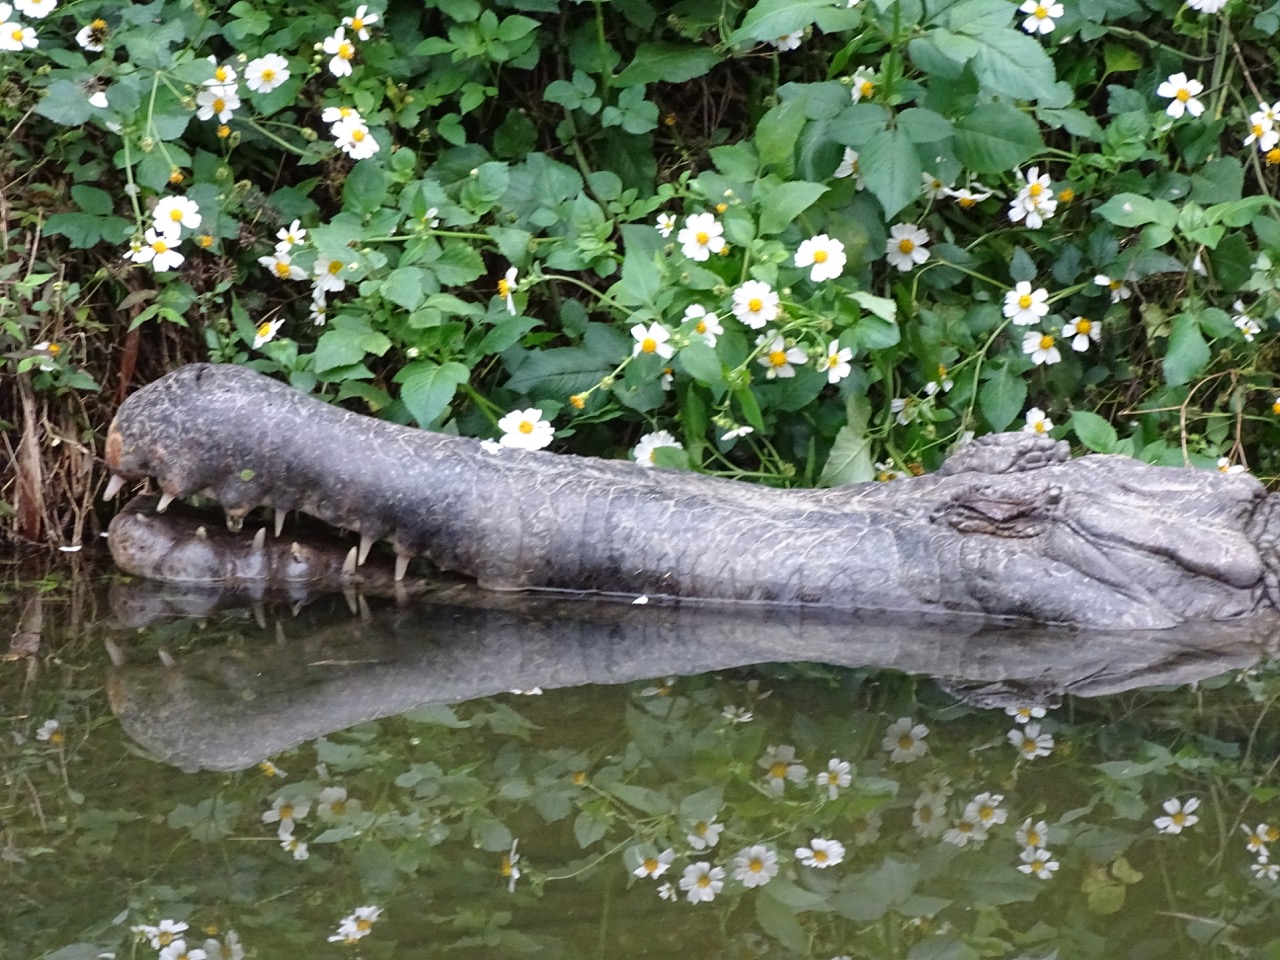 Crocodile at Taipei Zoo